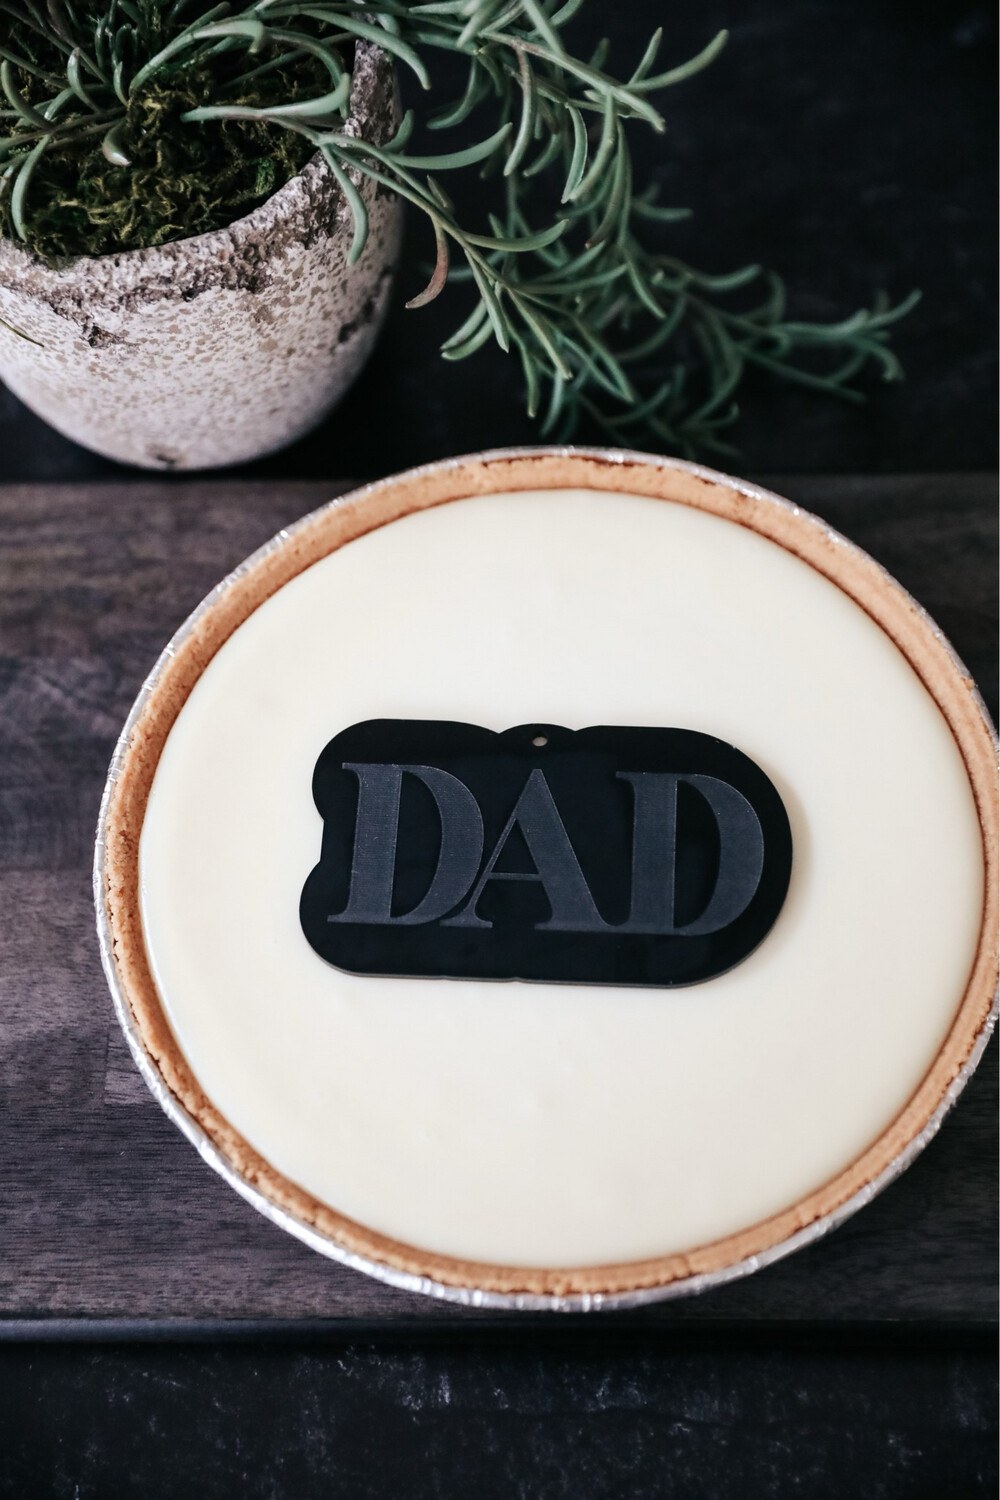 9” Pie + DAD Tag